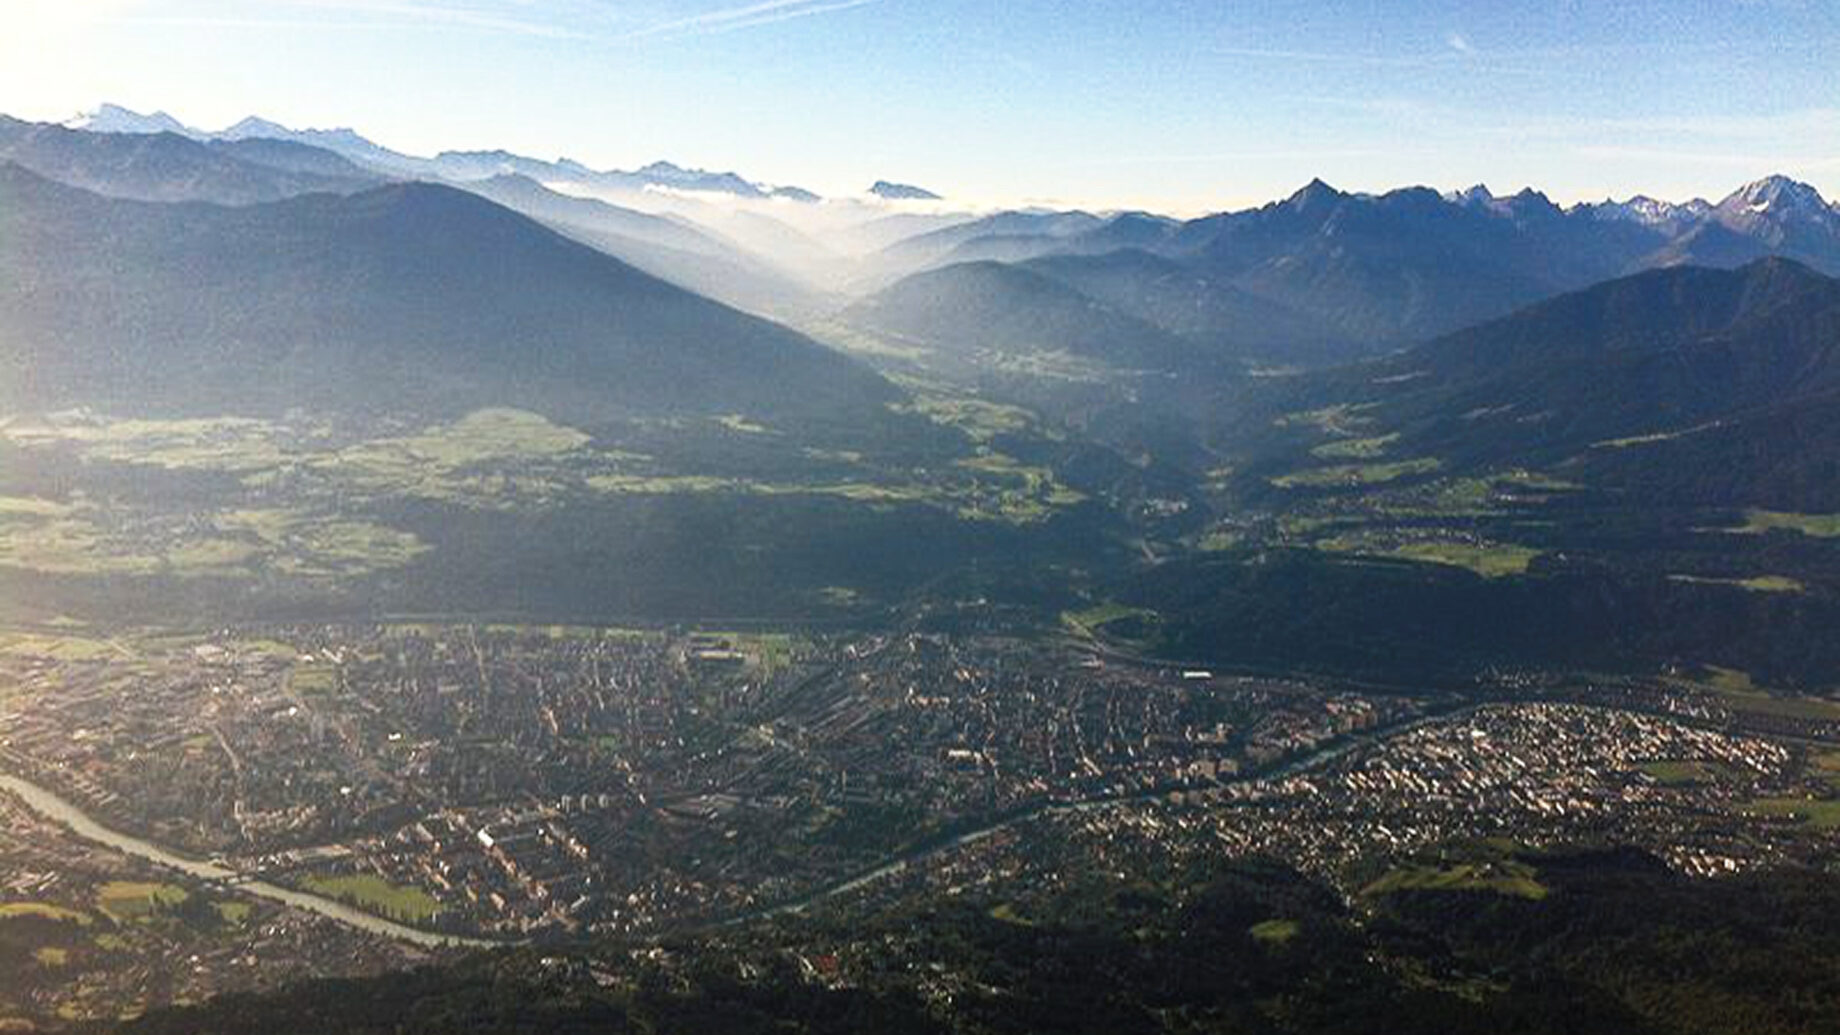 Blick auf Innsbruck von der Nordkette aus. Foto: A. Heufelder